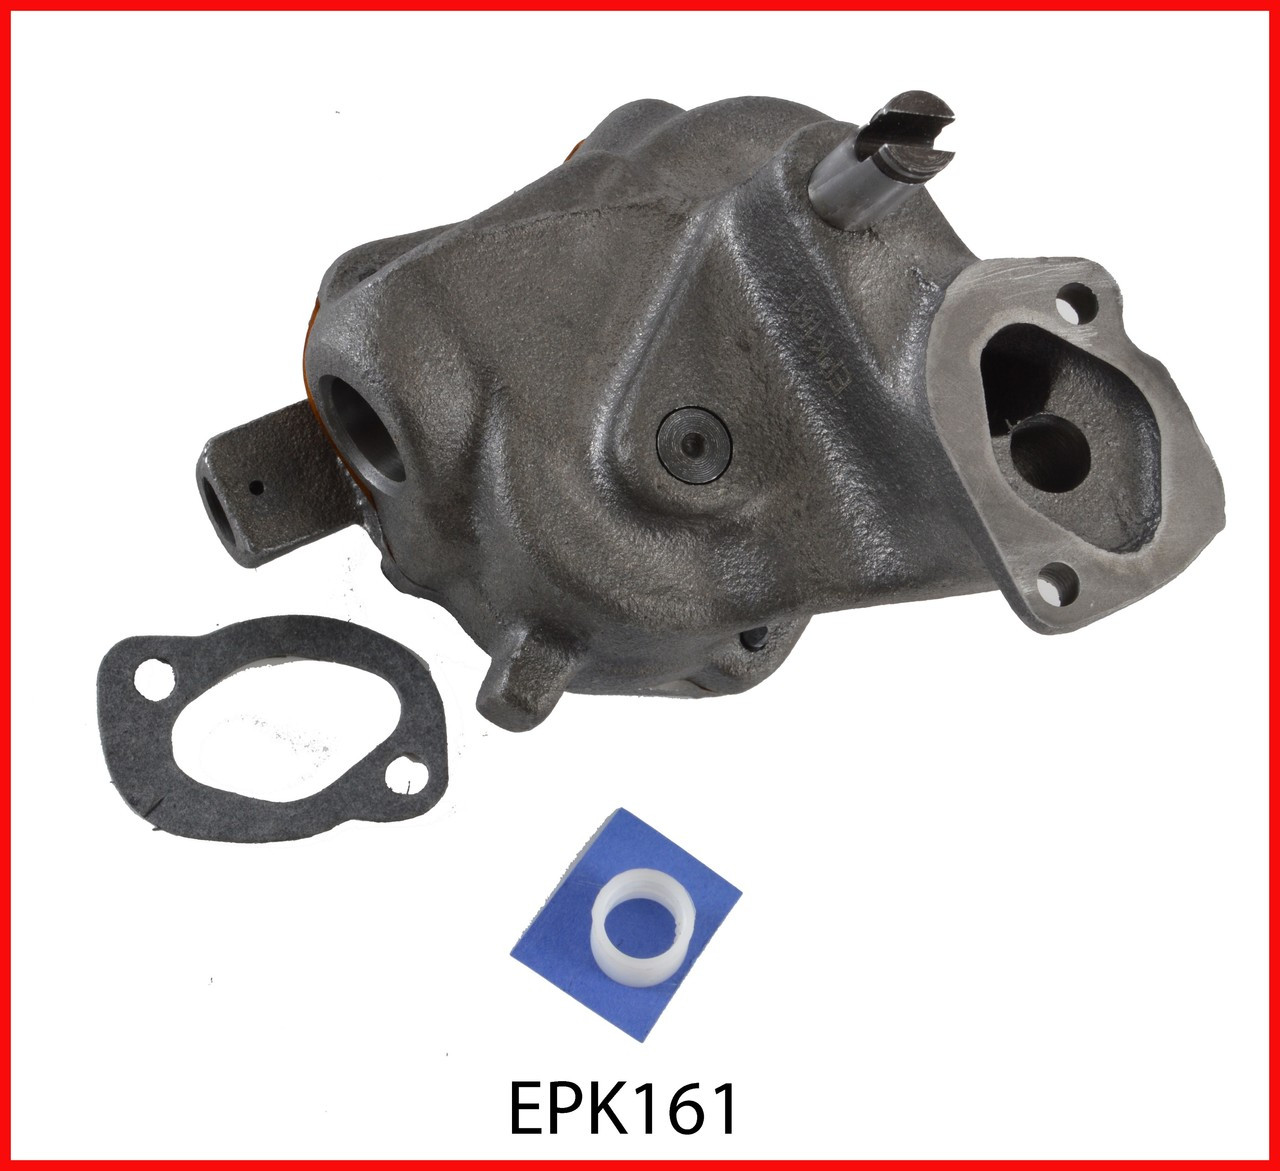 Oil Pump - 1992 GMC C2500 7.4L (EPK161.K805)